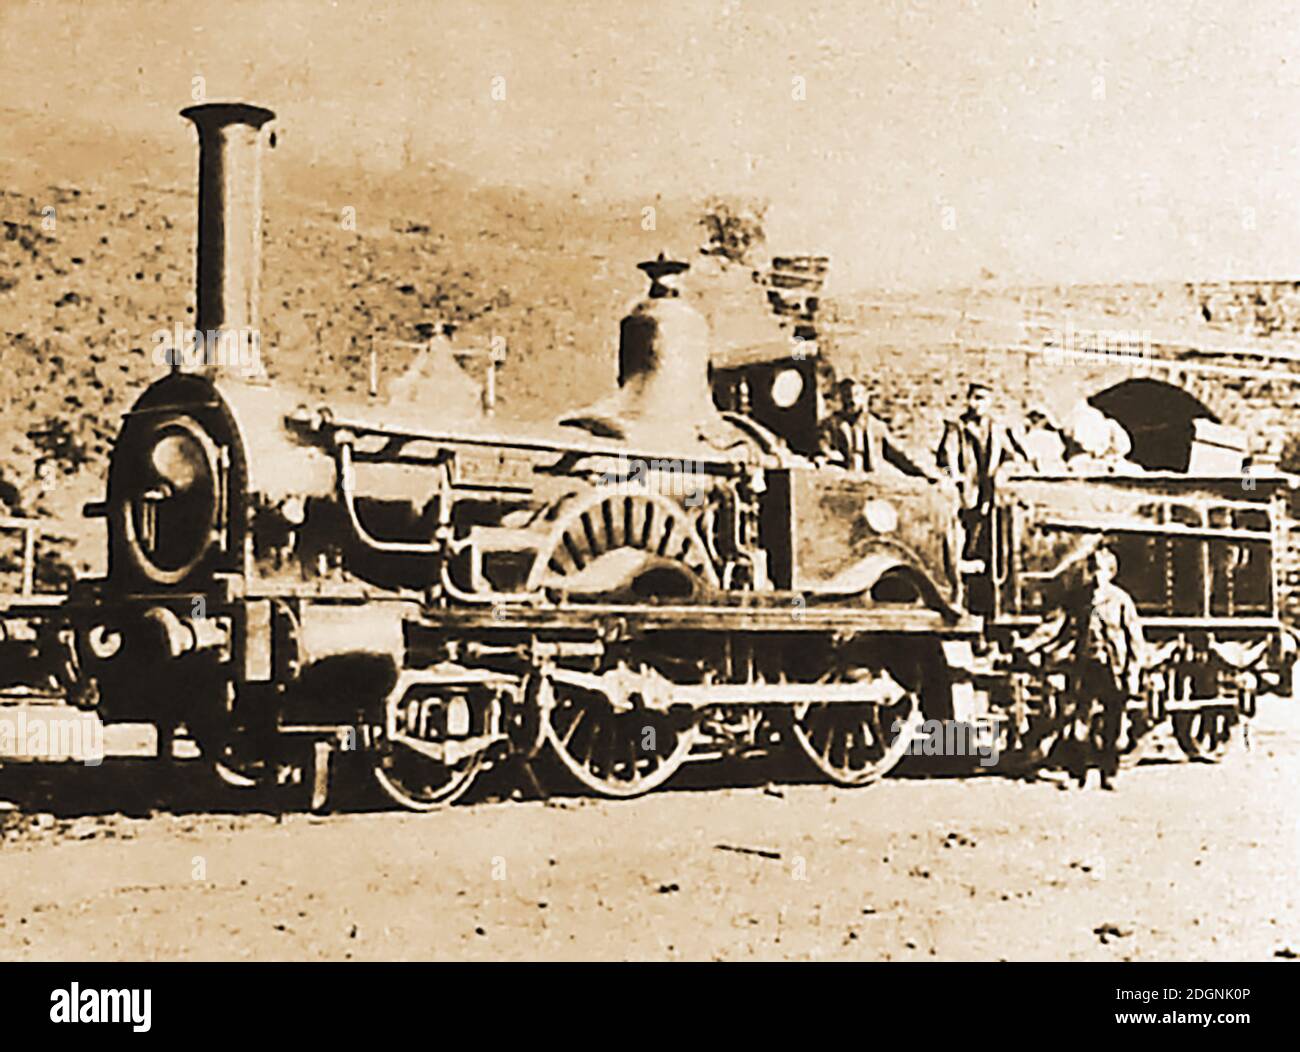 Una rara fotografía antigua de la locomotora de vapor 'Sibil' construida especialmente para la L.S.W.R. (London y South Western Railway) en 1868. Foto de stock